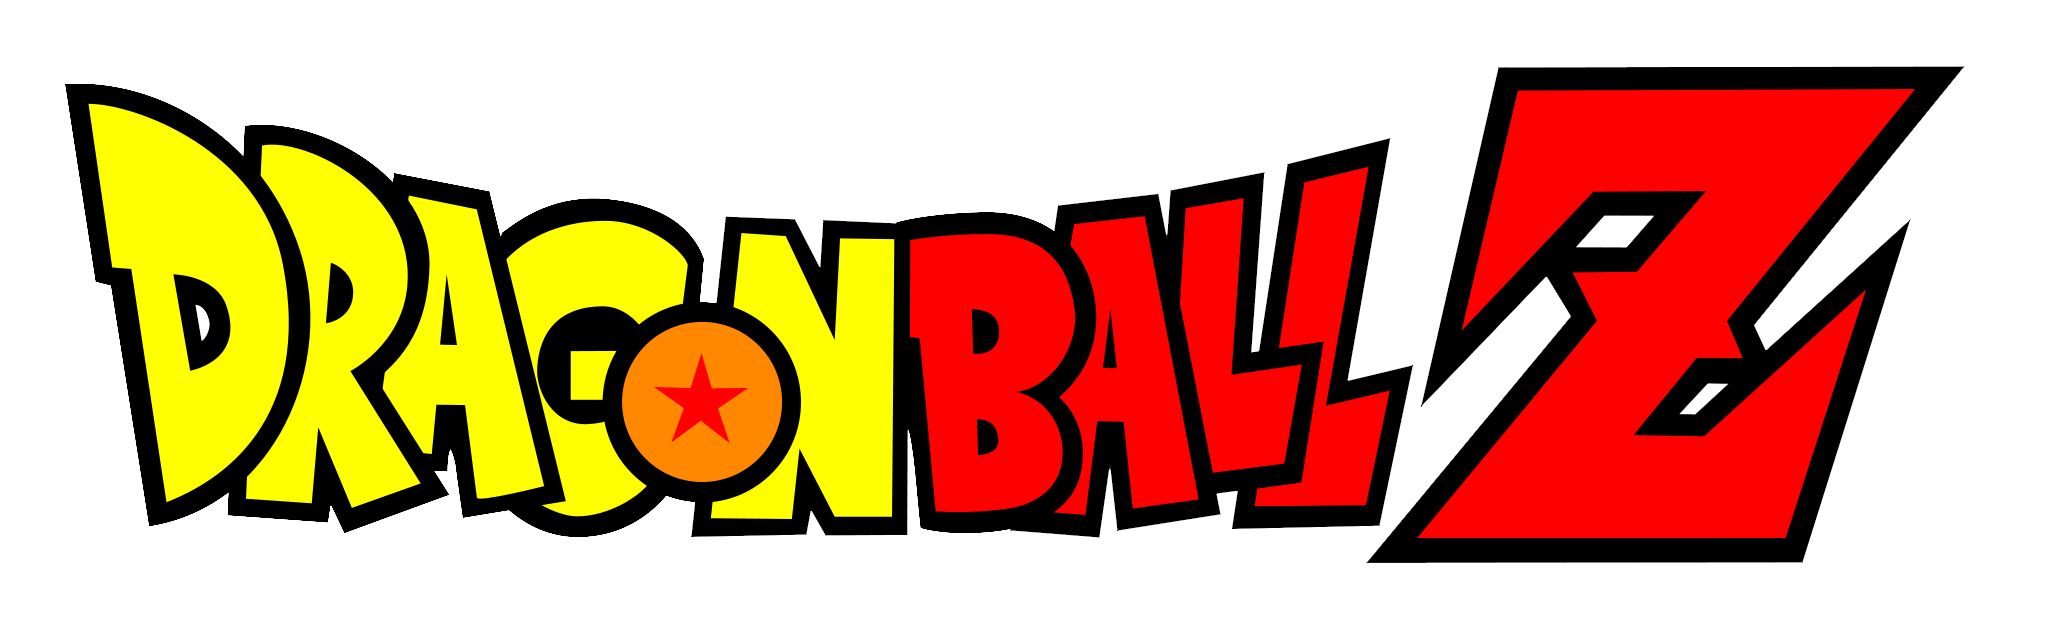 Dragon_Ball_Z_logo.png